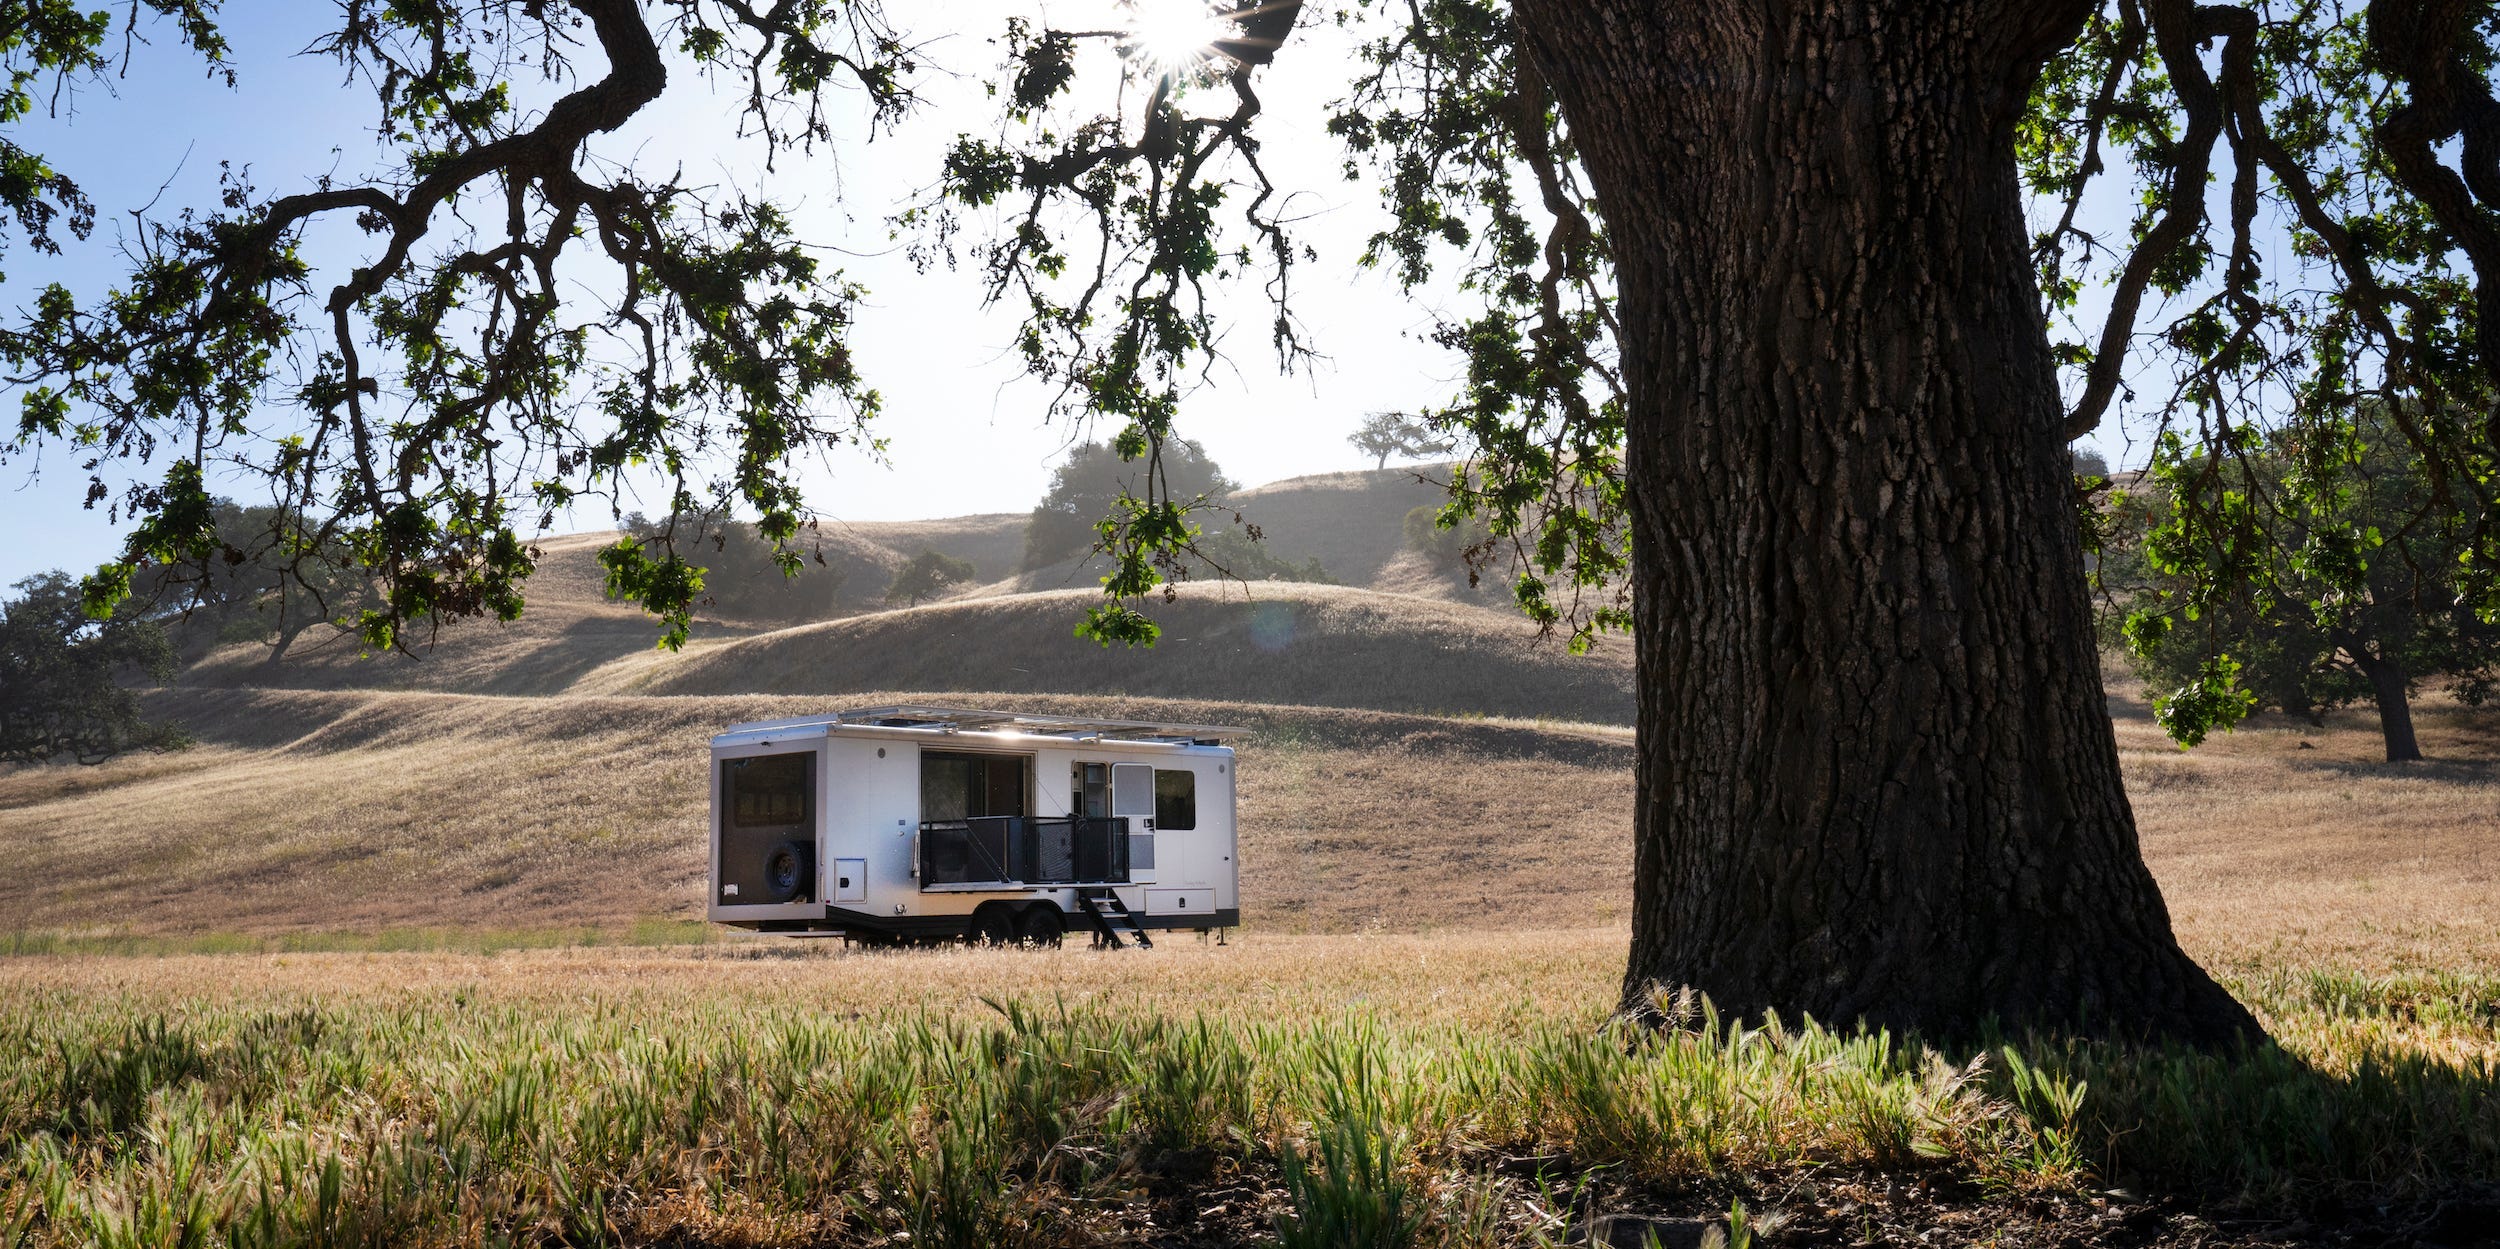 De buitenkant van de reiswagen zoals die op een bruin veld bij een boom staat.